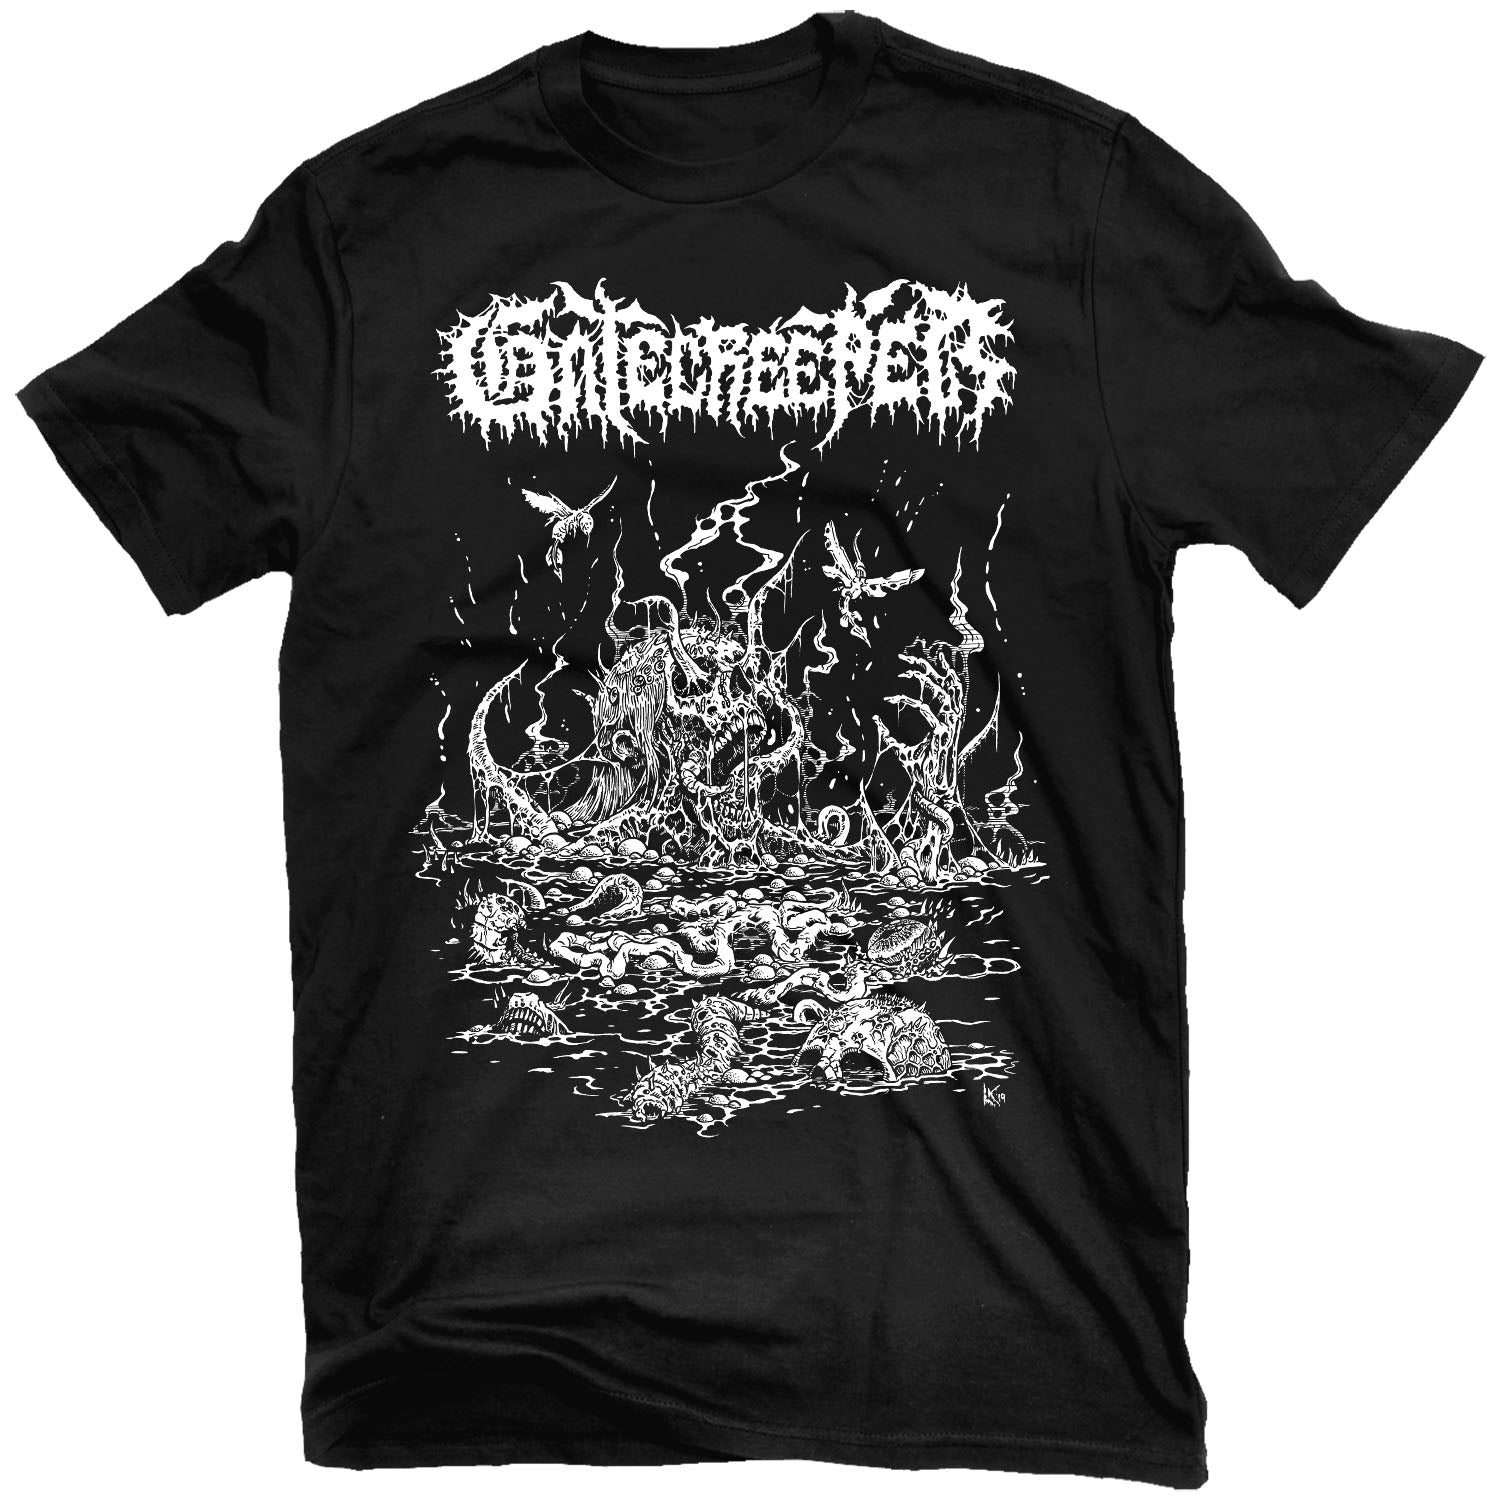 Gatecreeper "Deserted" T-Shirt